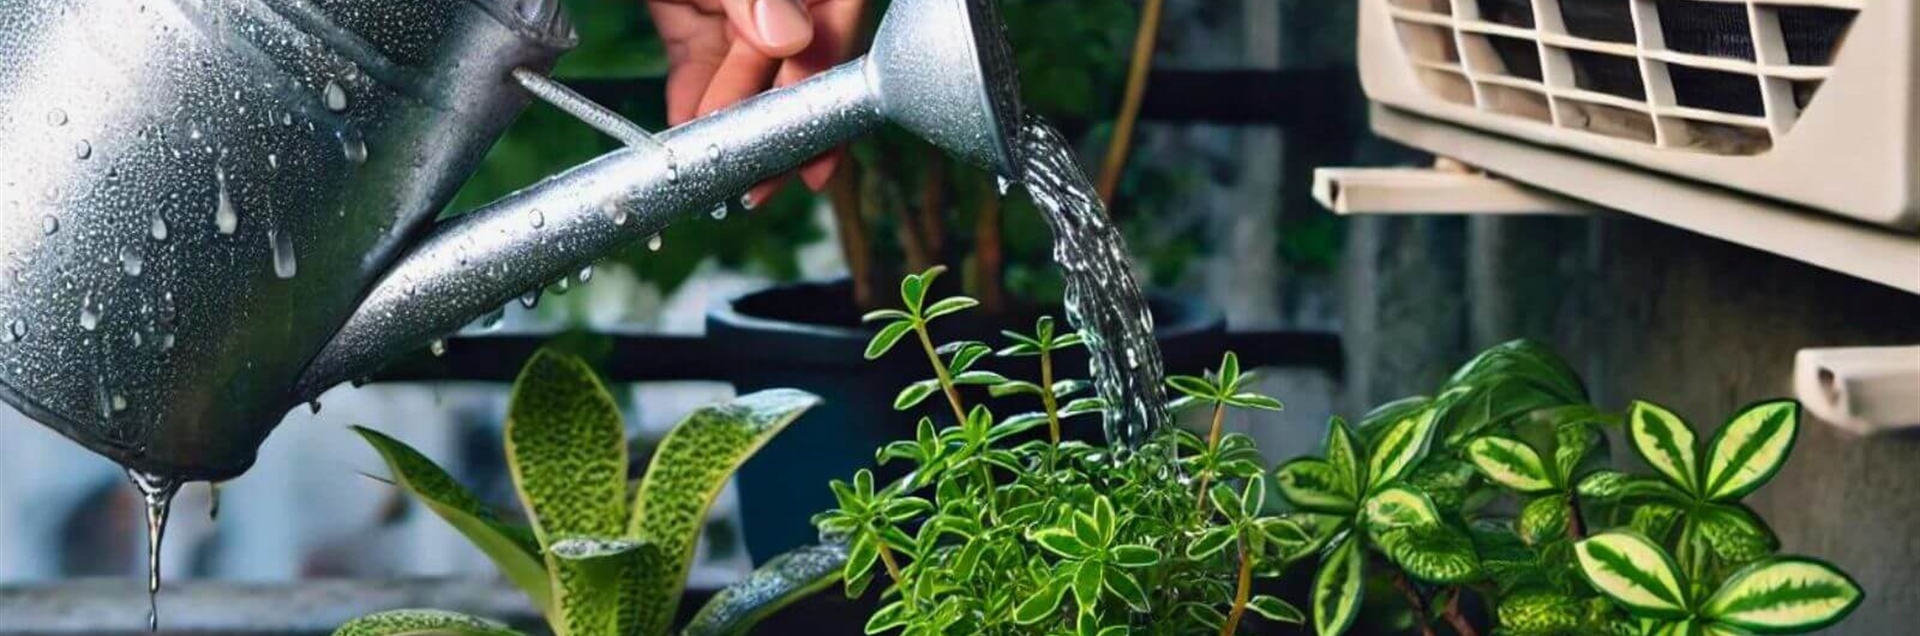 Полив растений водой из кондиционера: плюсы и минусы